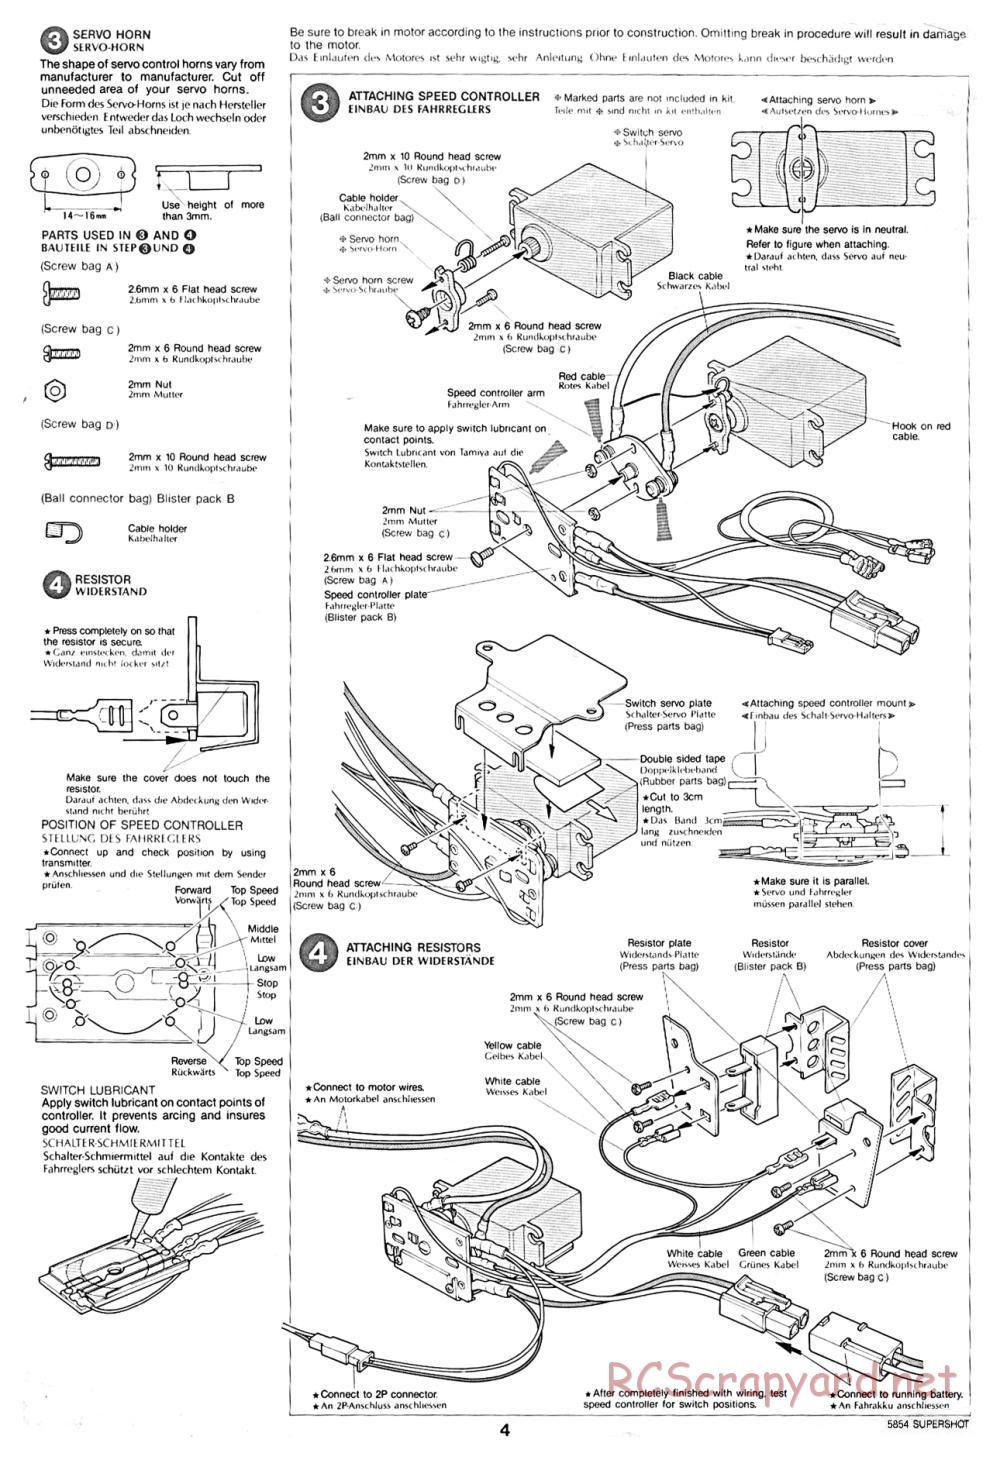 Tamiya - Supershot - 58054 - Manual - Page 4